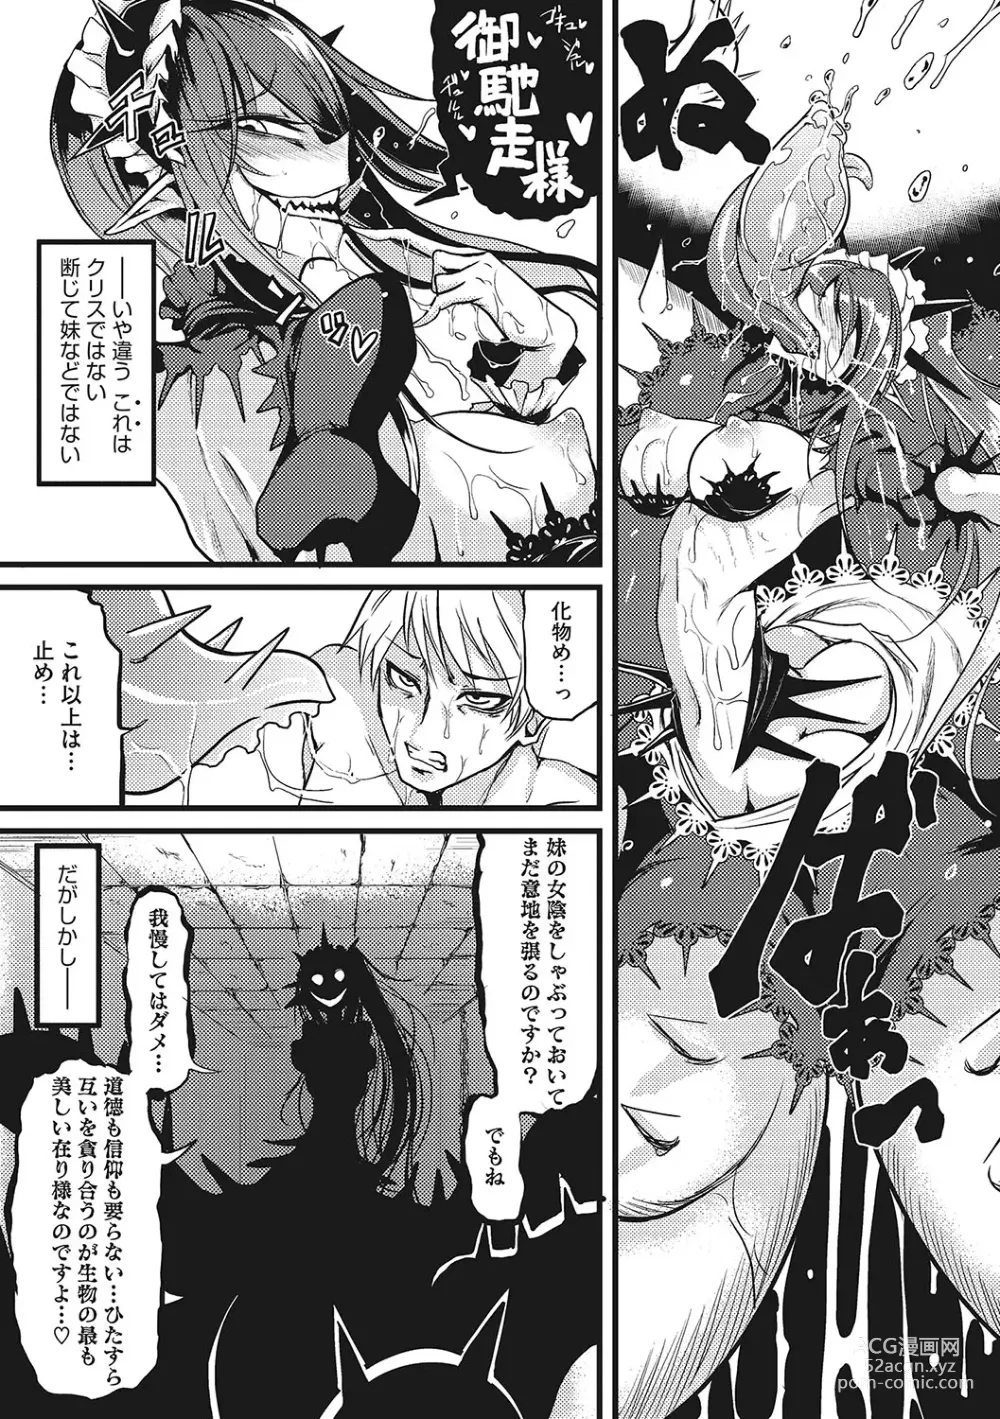 Page 282 of manga Sanpai Shoujo